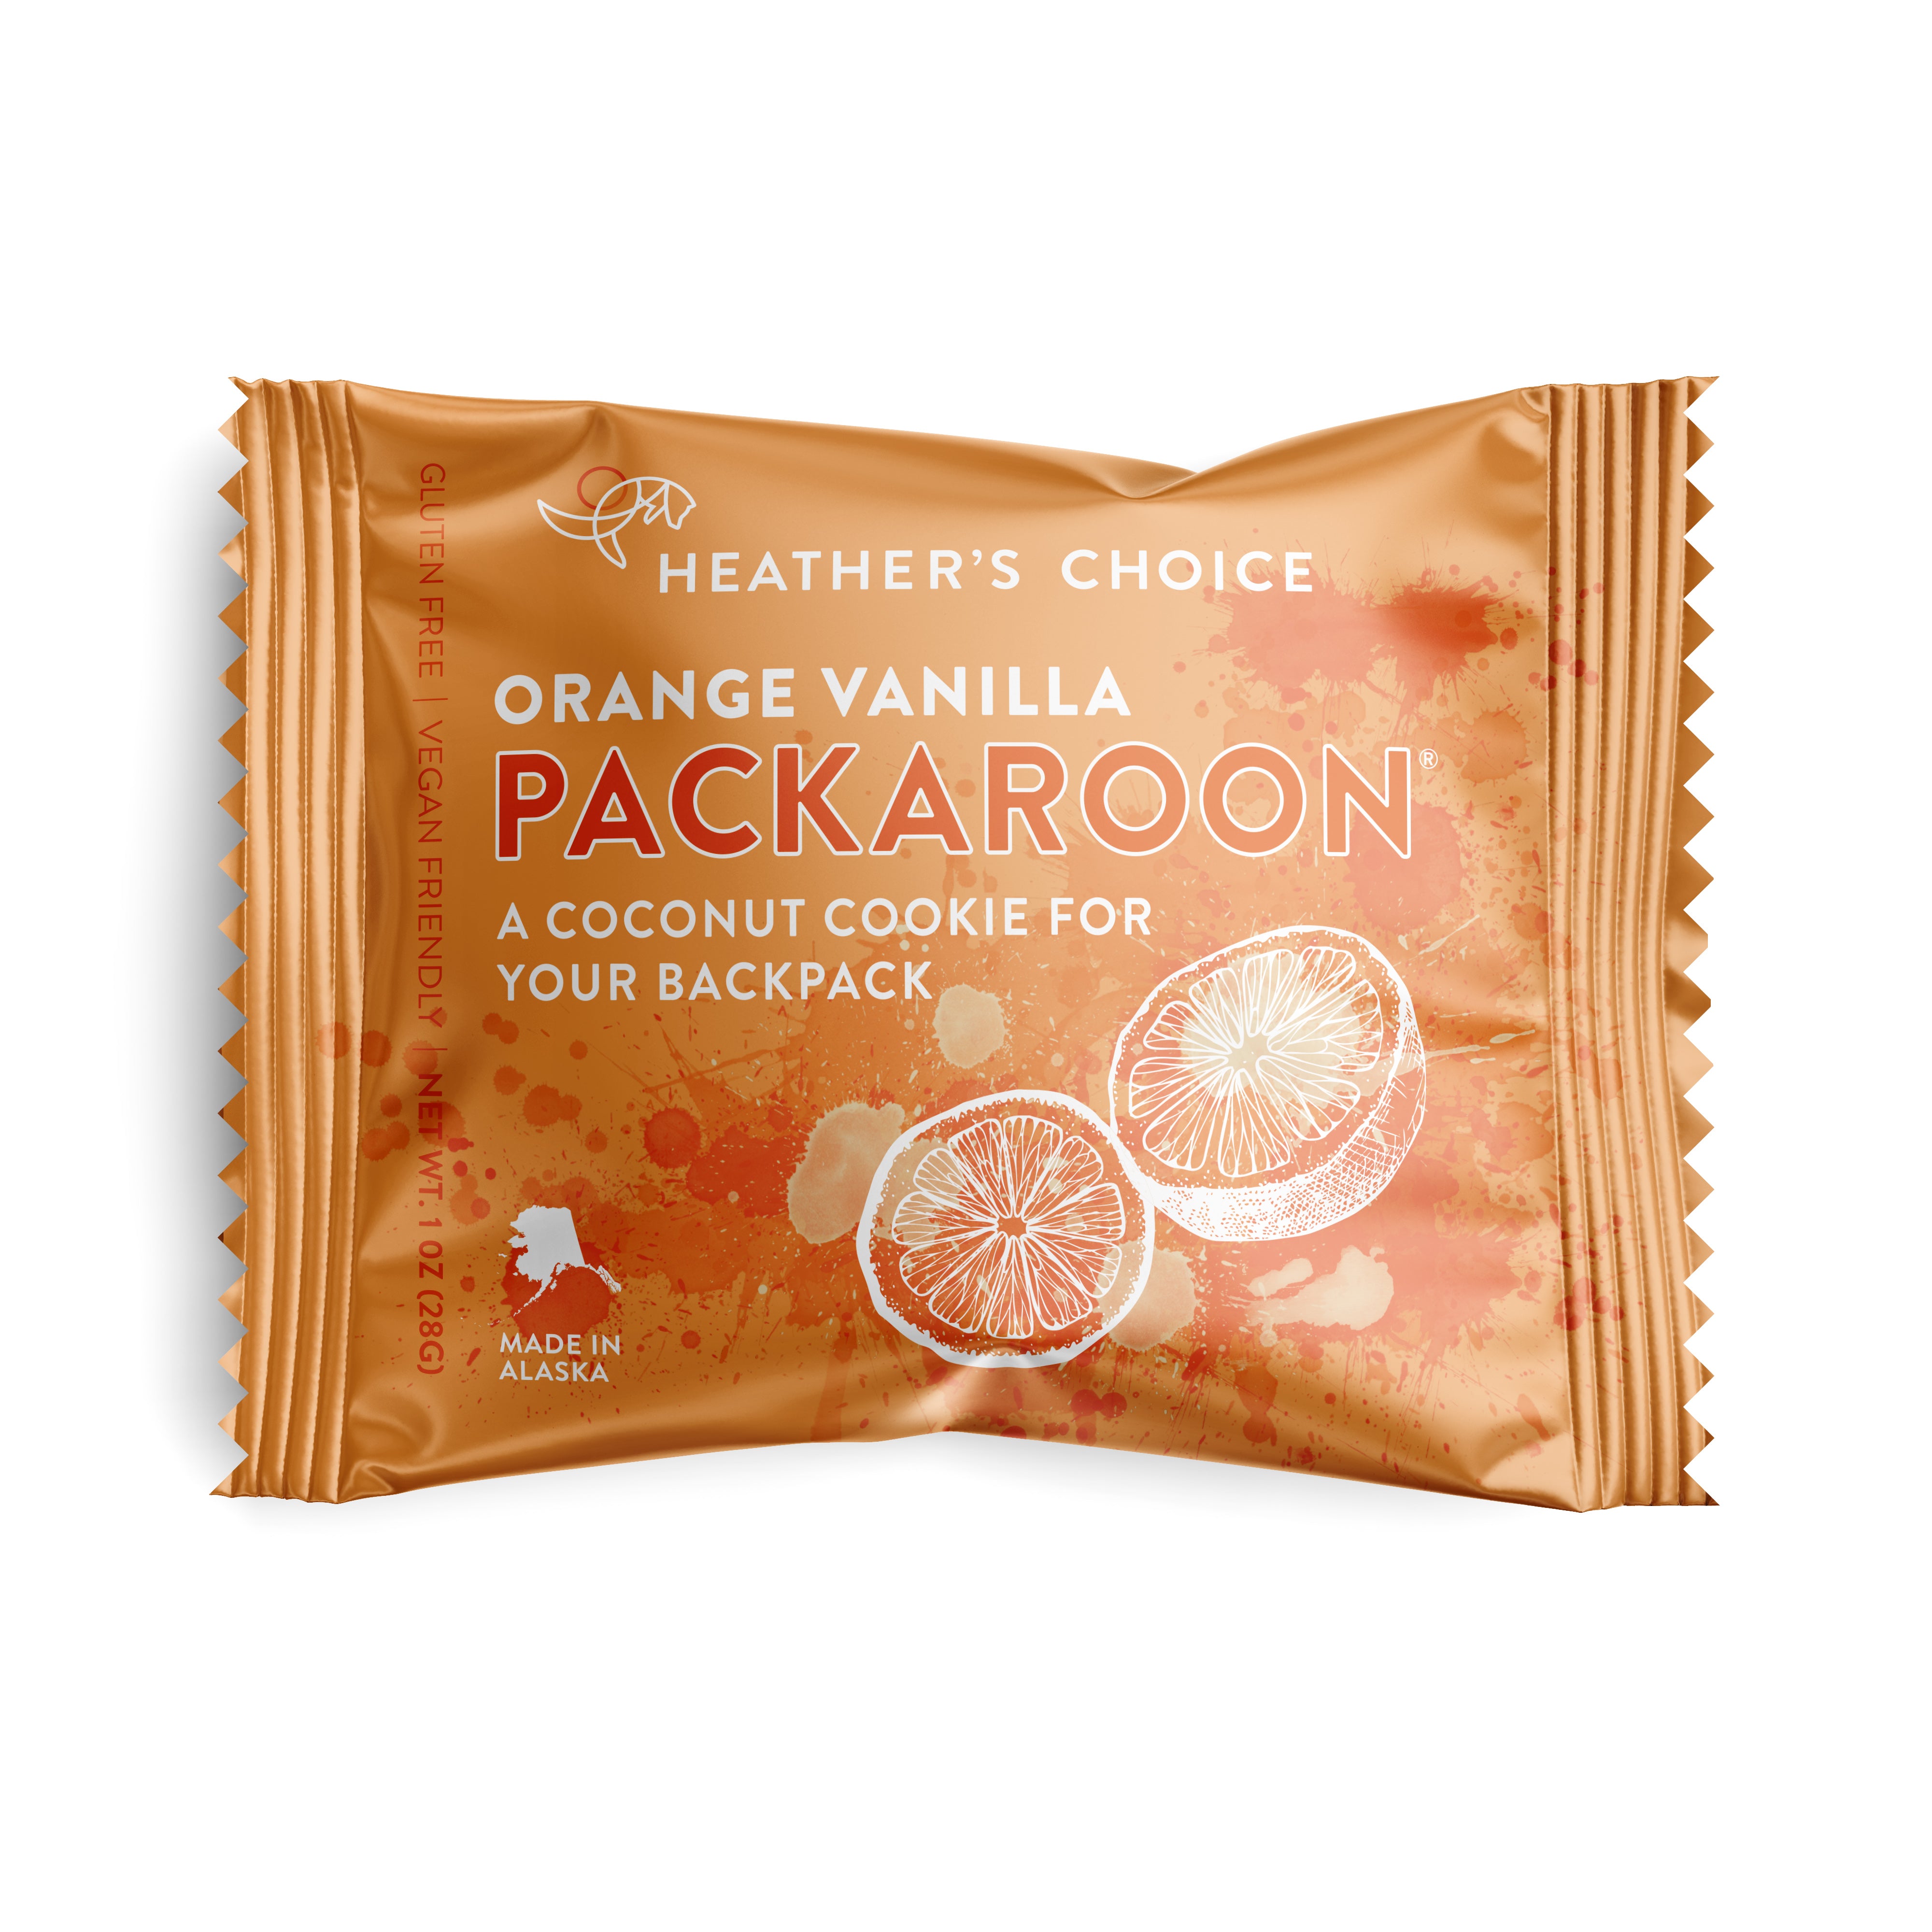 Orange Vanilla Packaroon dairy-free snack - frontside of packaging